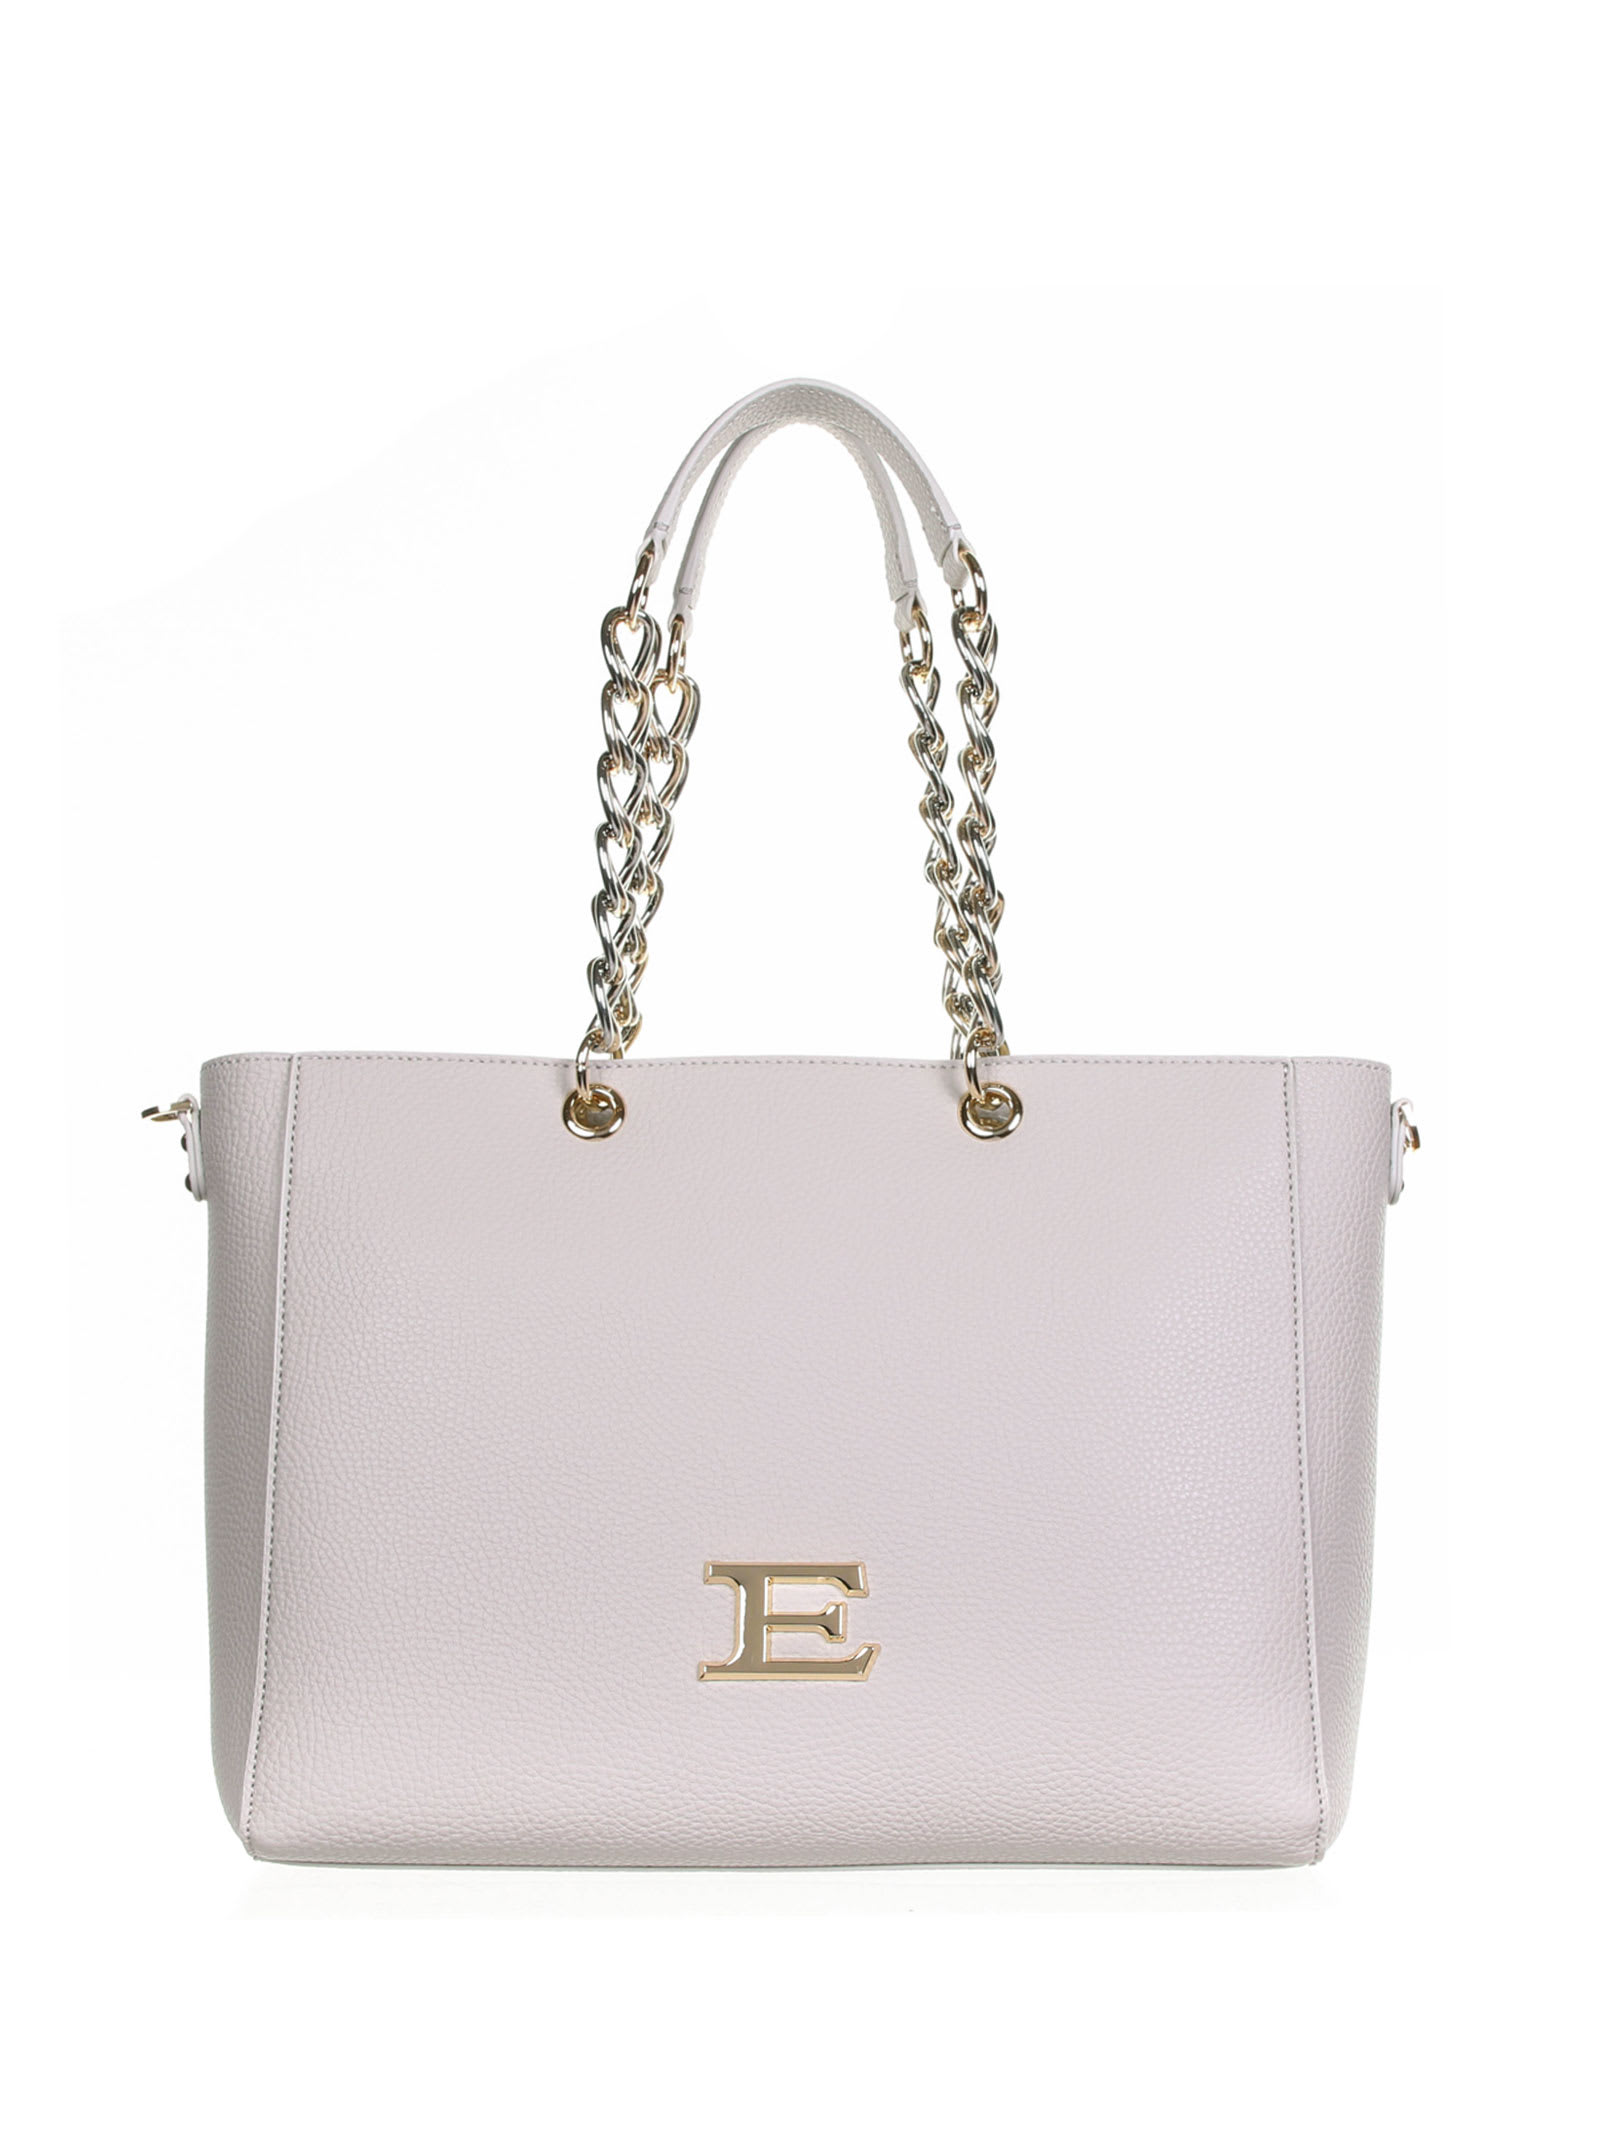 Ermanno Scervino Eba White Cream Shopping Bag